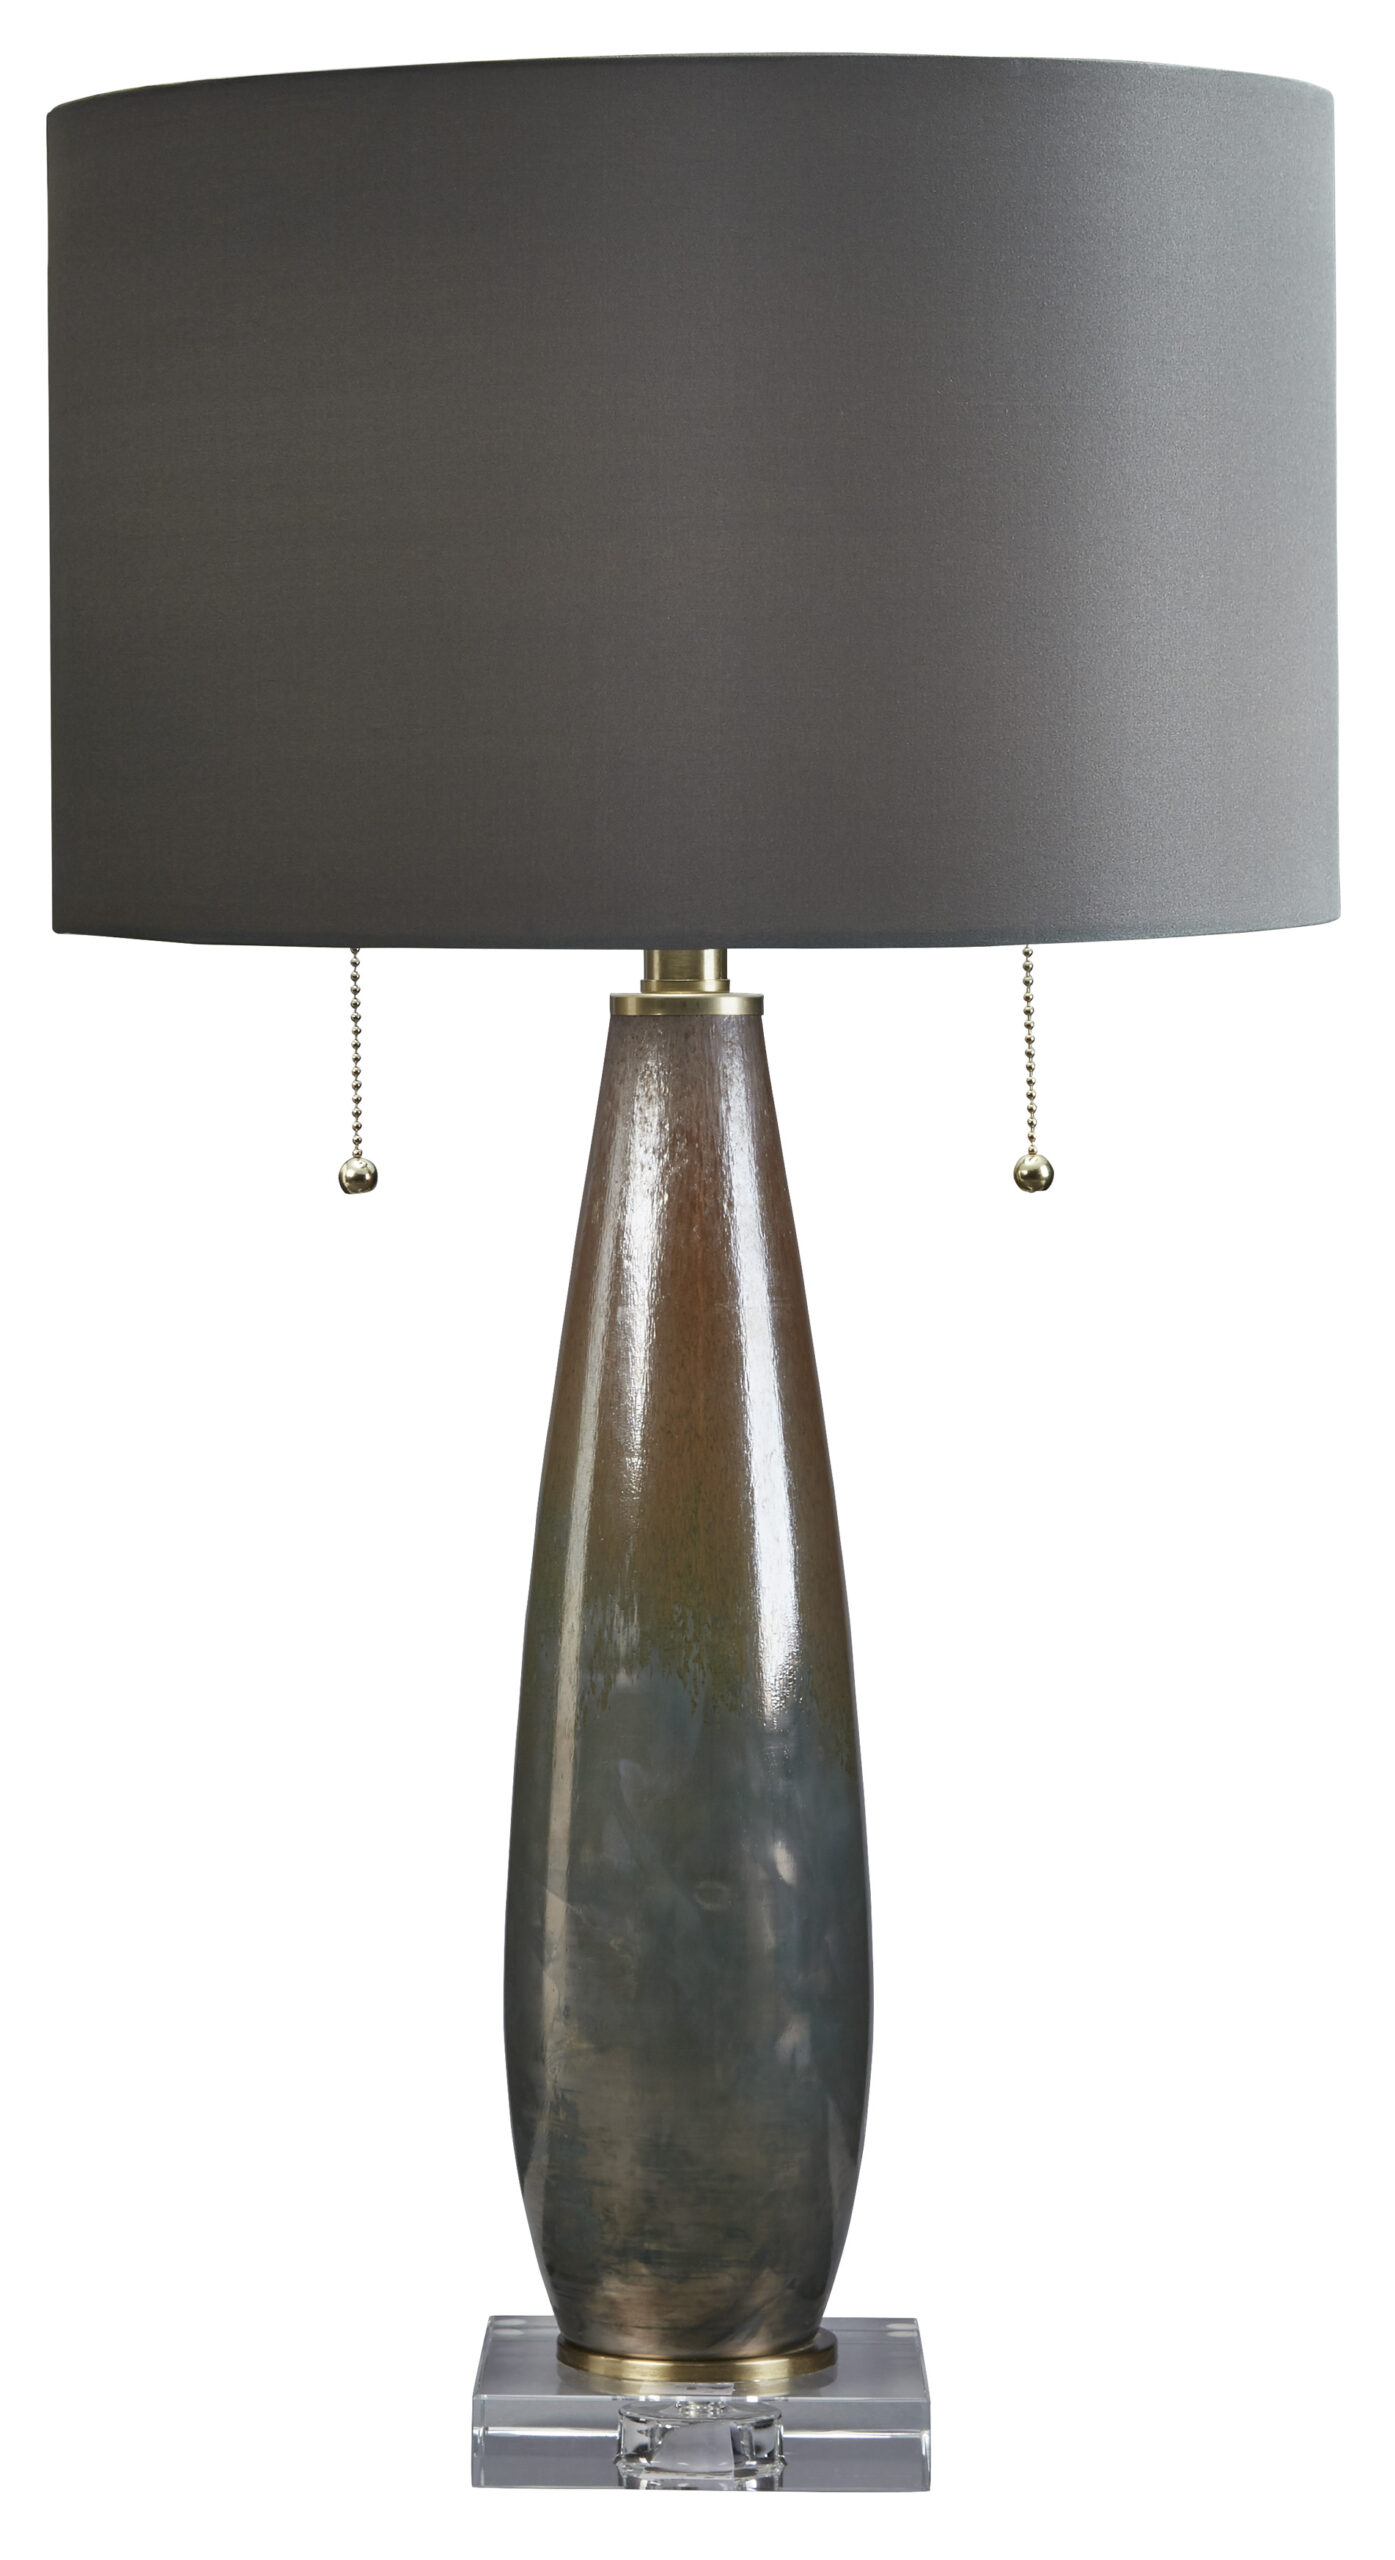 L430734 Oranburg Table Lamp